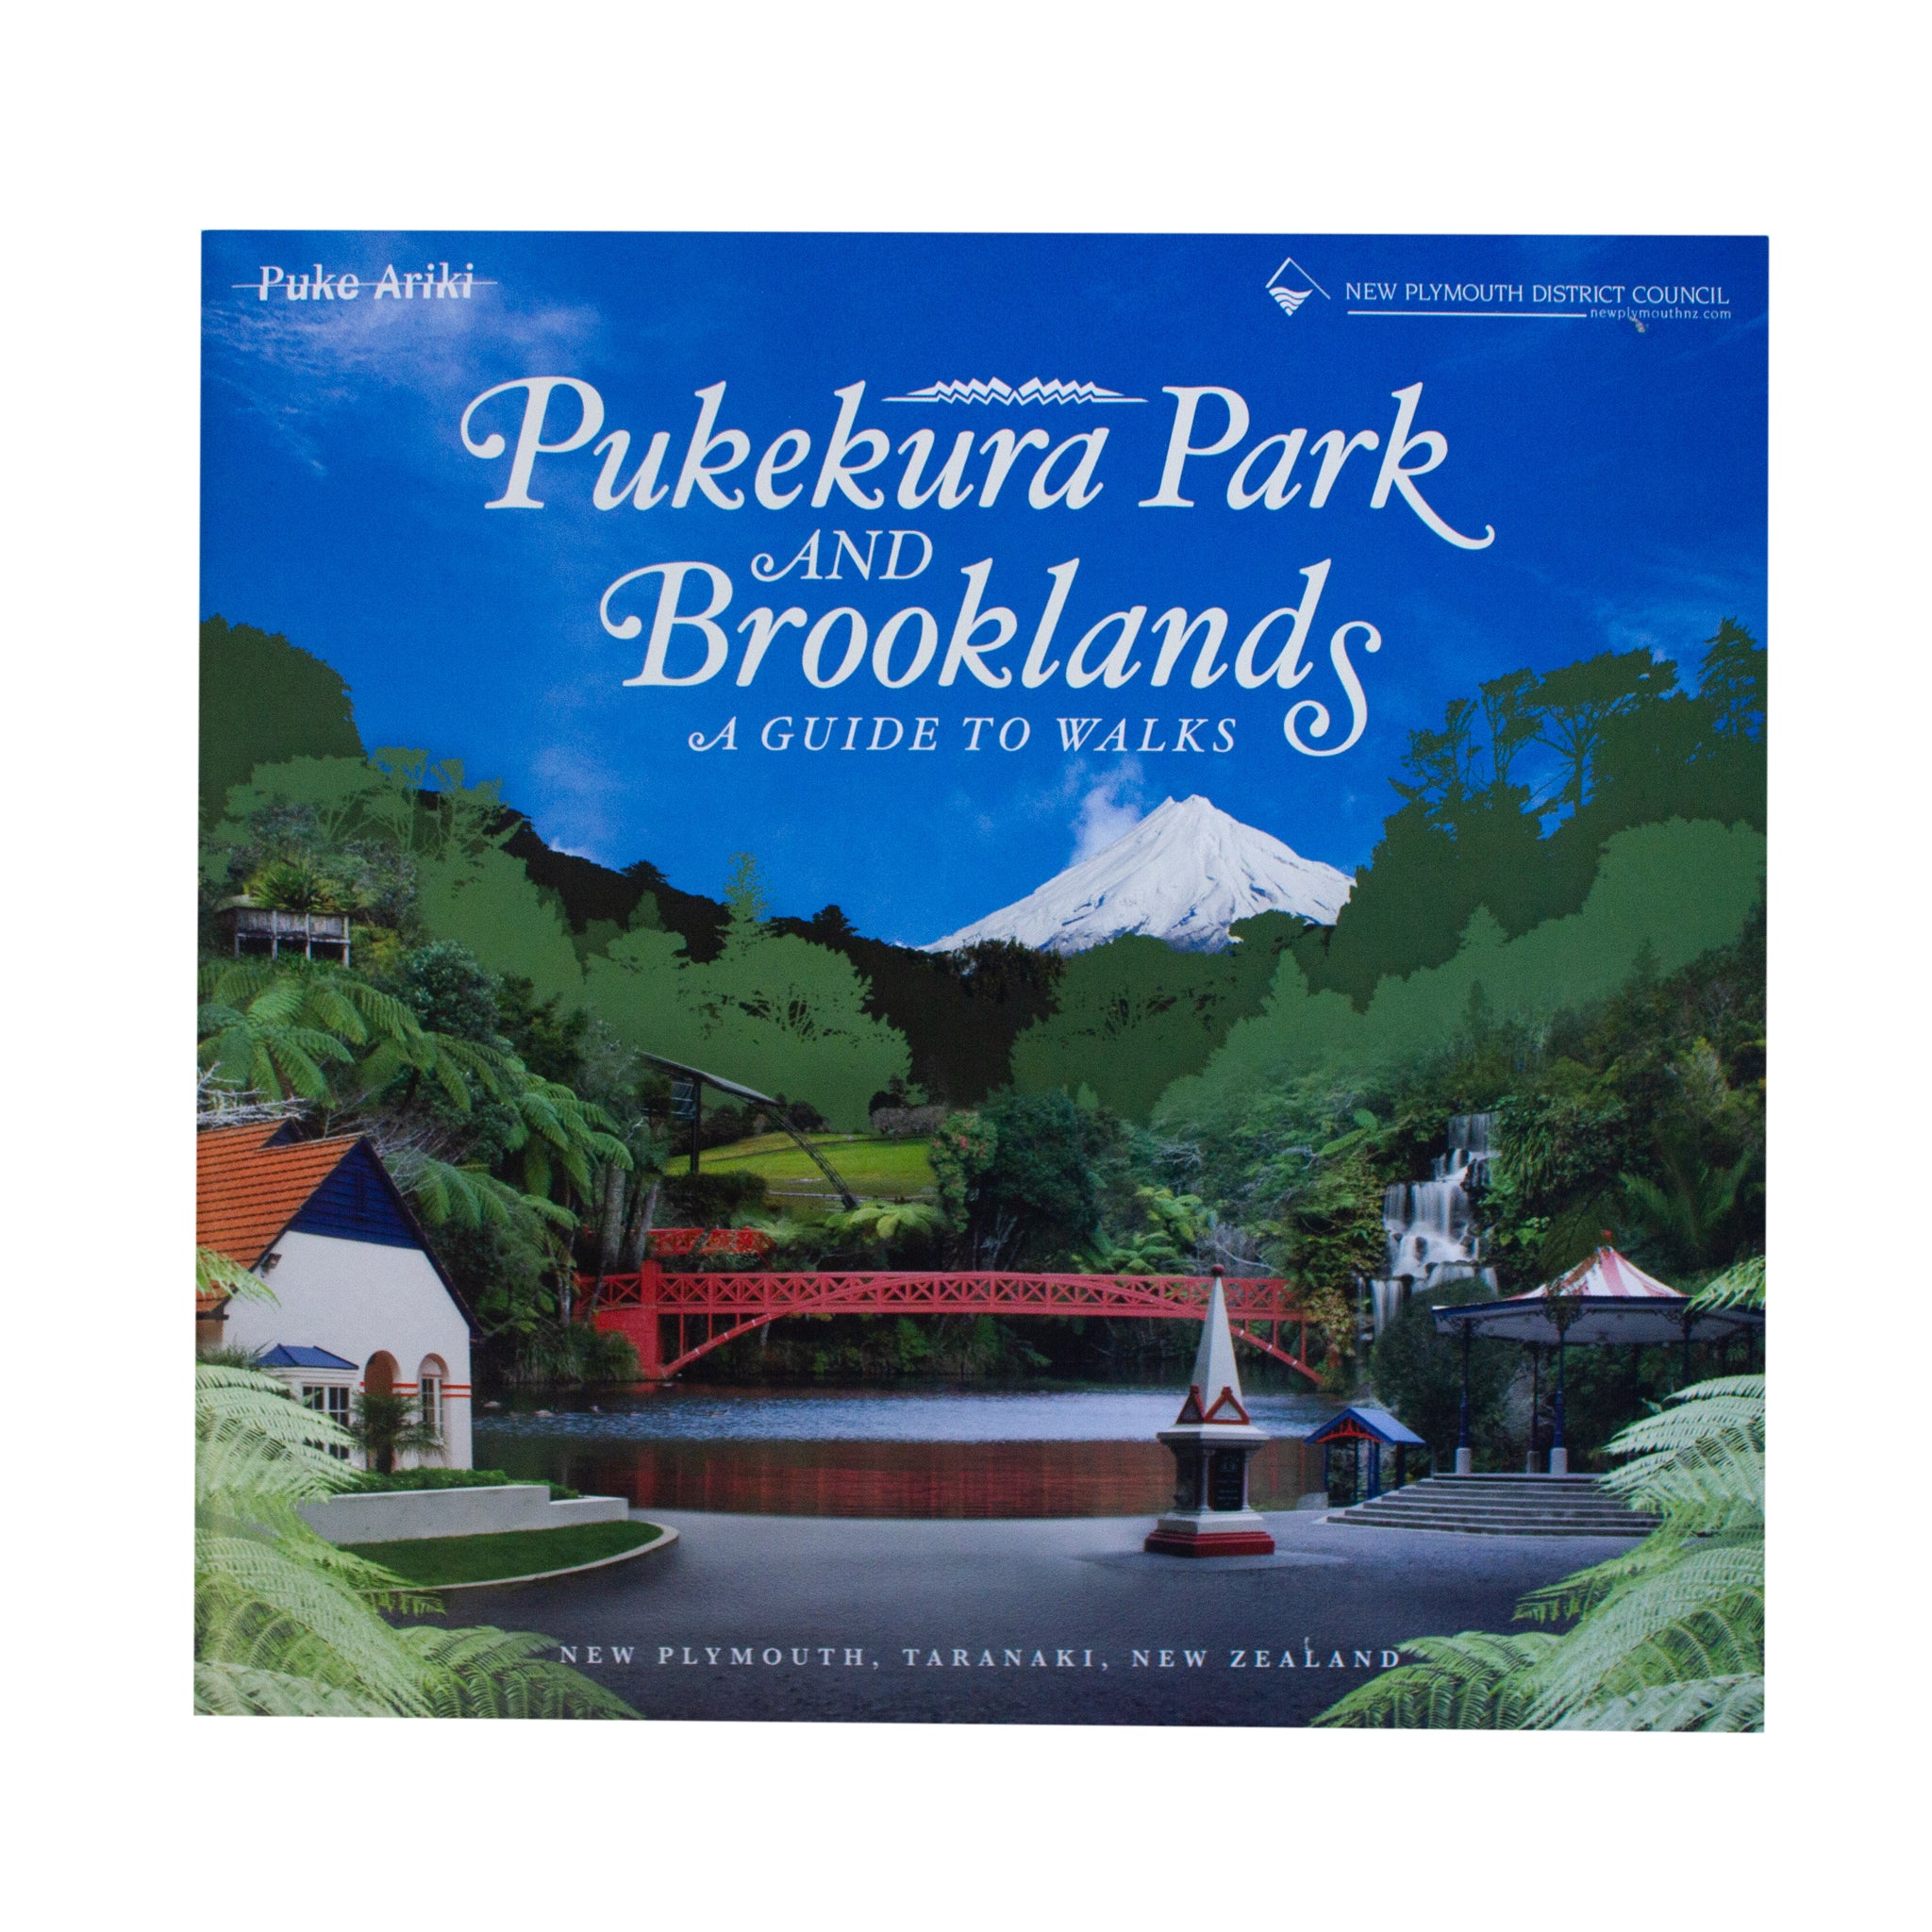 Pukekura Park and Brooklands - A Guide to Walks